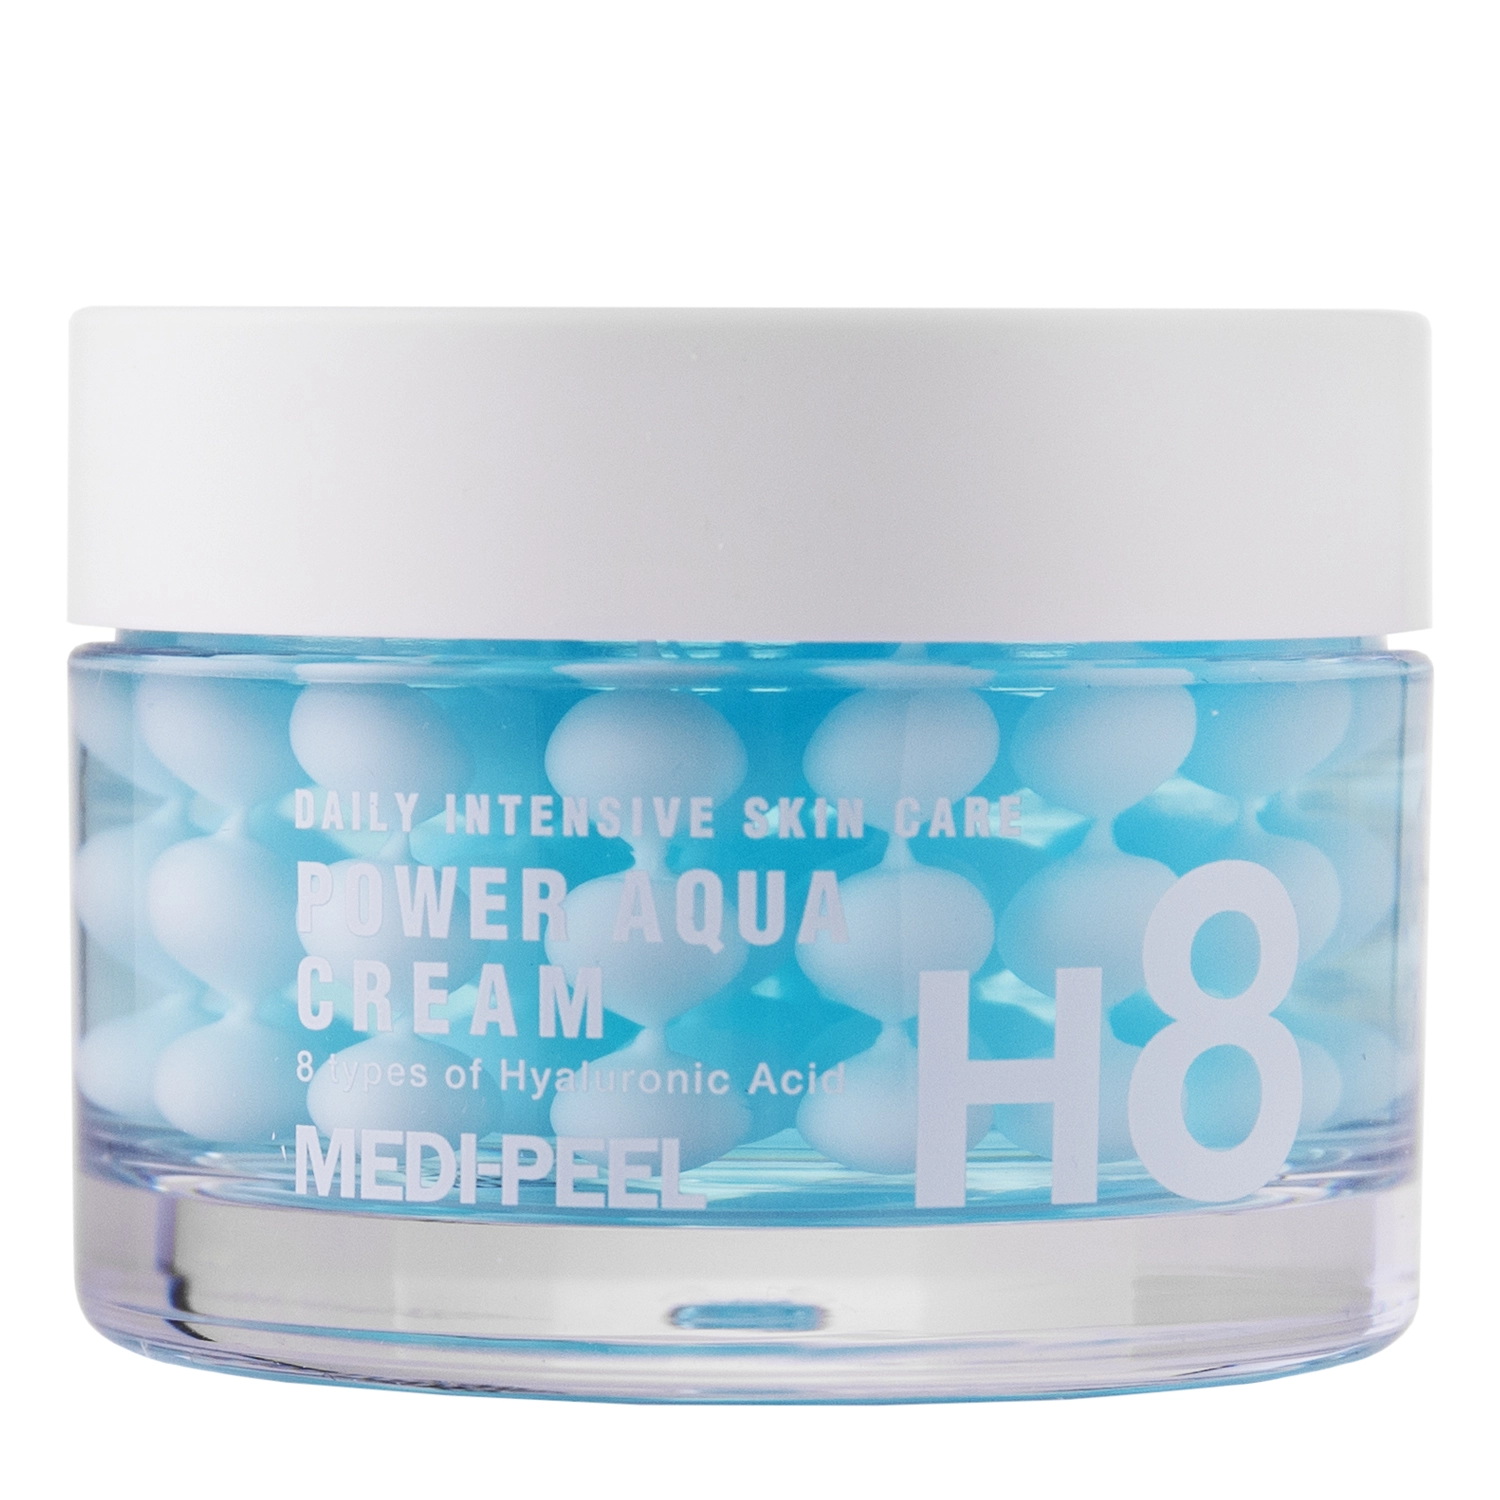 Medi-Peel - Power Aqua Cream - Интенсивно увлажняющий крем с гиалуроновыми капсулами - 50ml